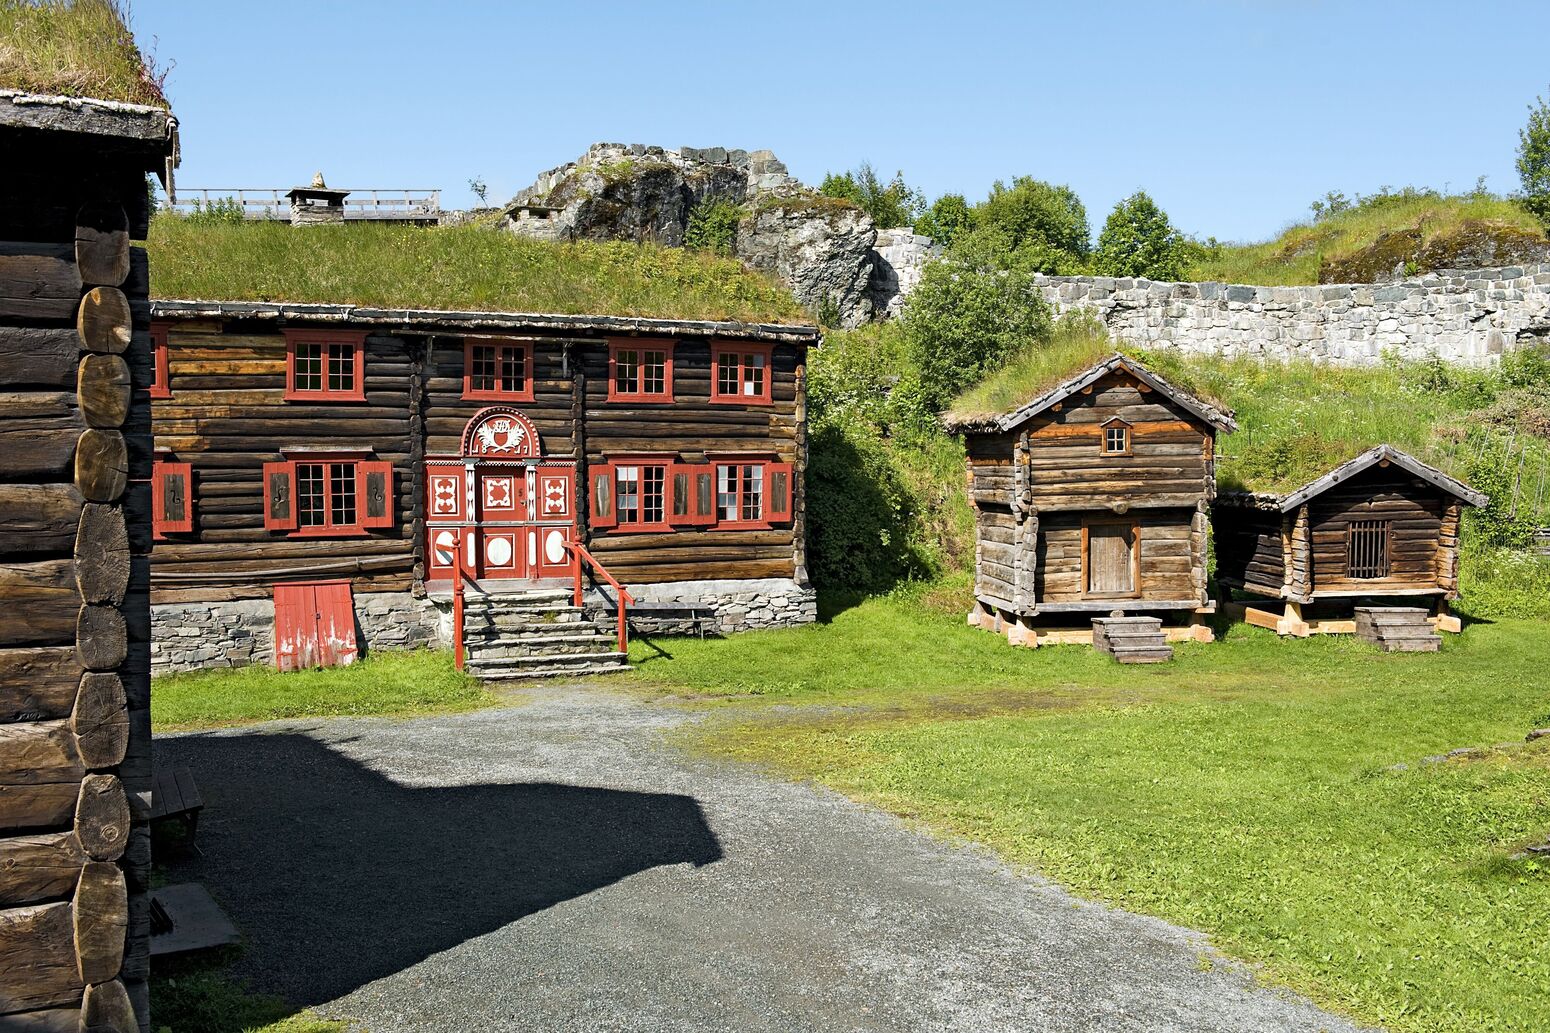 Destination, Northern Europe, house, hut, grass, Norway, Trondheim, excursion, open air museum